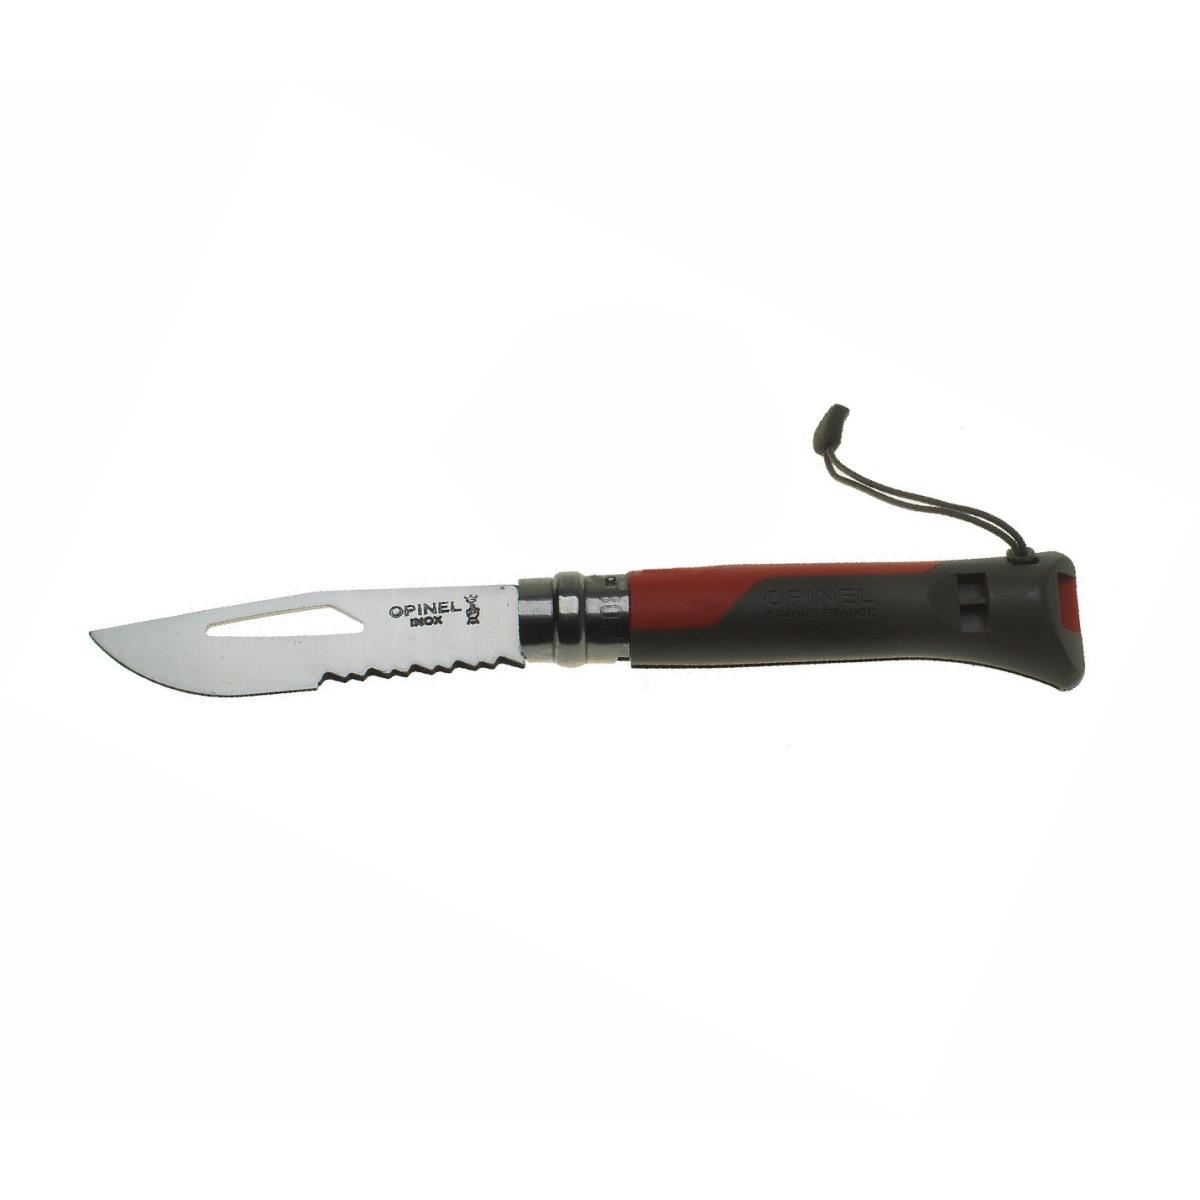 Нож Opinel 8 VRI Outdoor knife двухцветная пластик. рукоять (красная), свисток, вставка для темляка